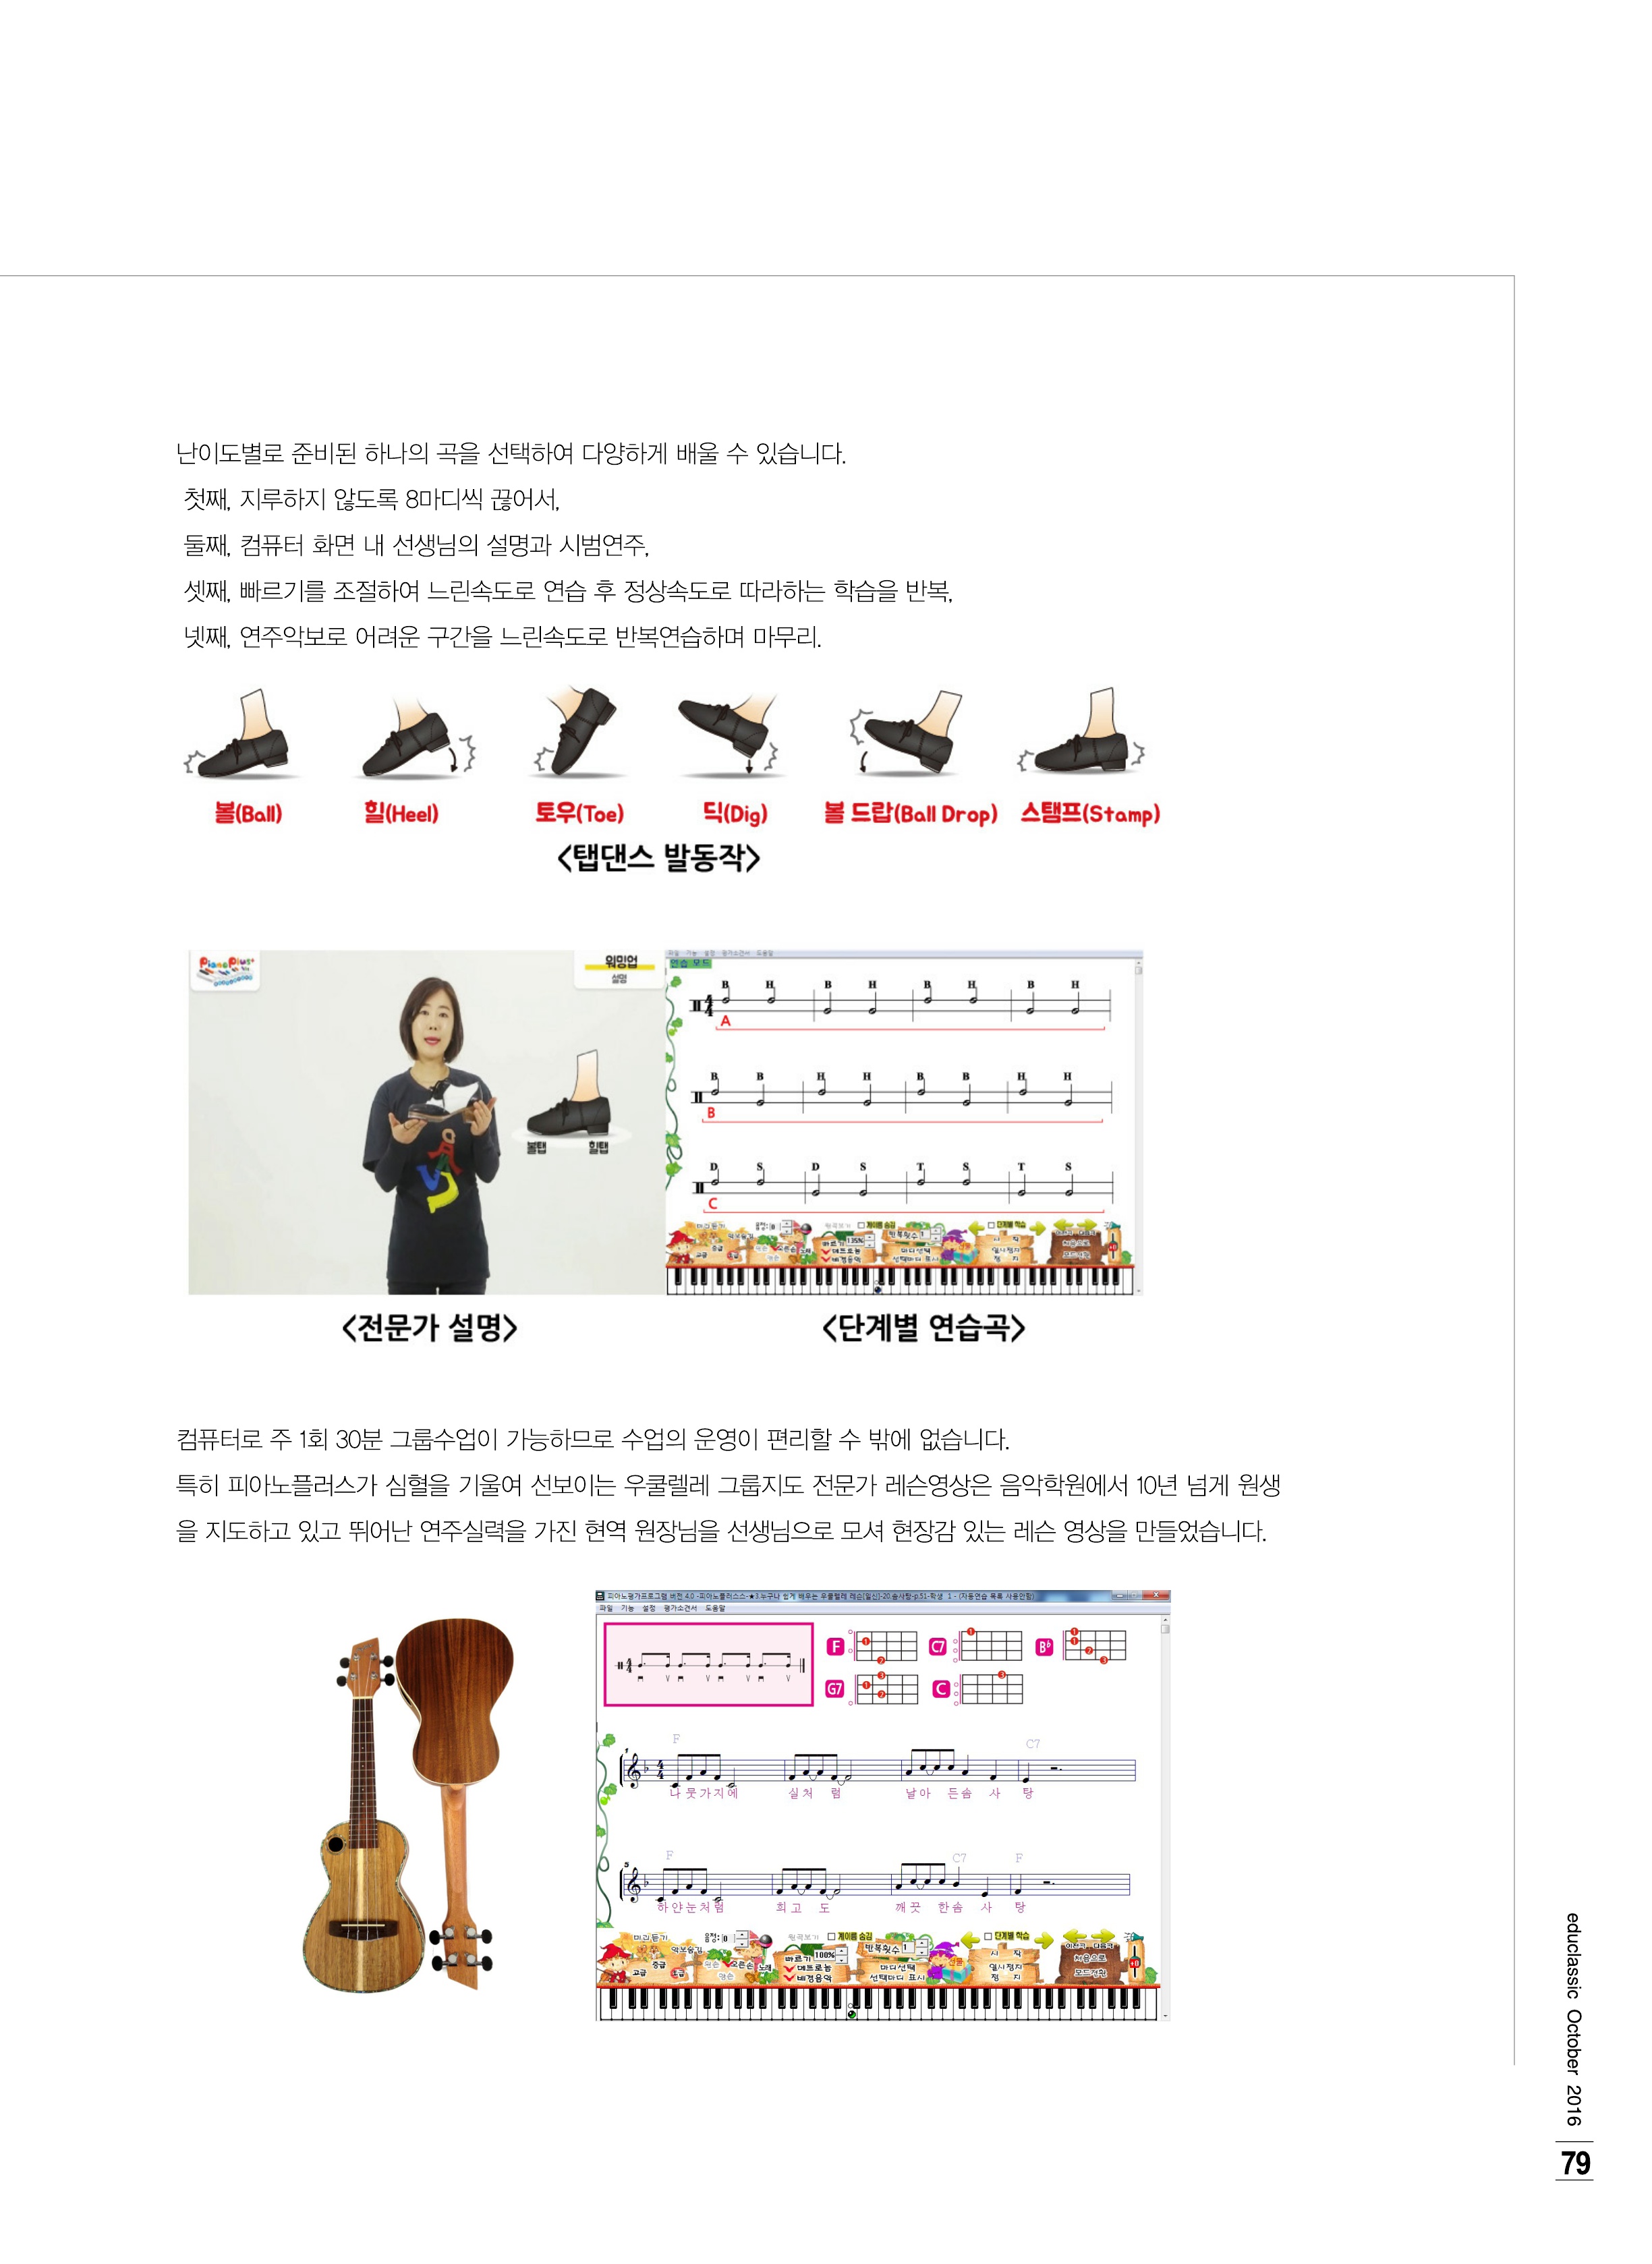 2016년 티쳐 10월호 피아노홈 기사_2.jpg